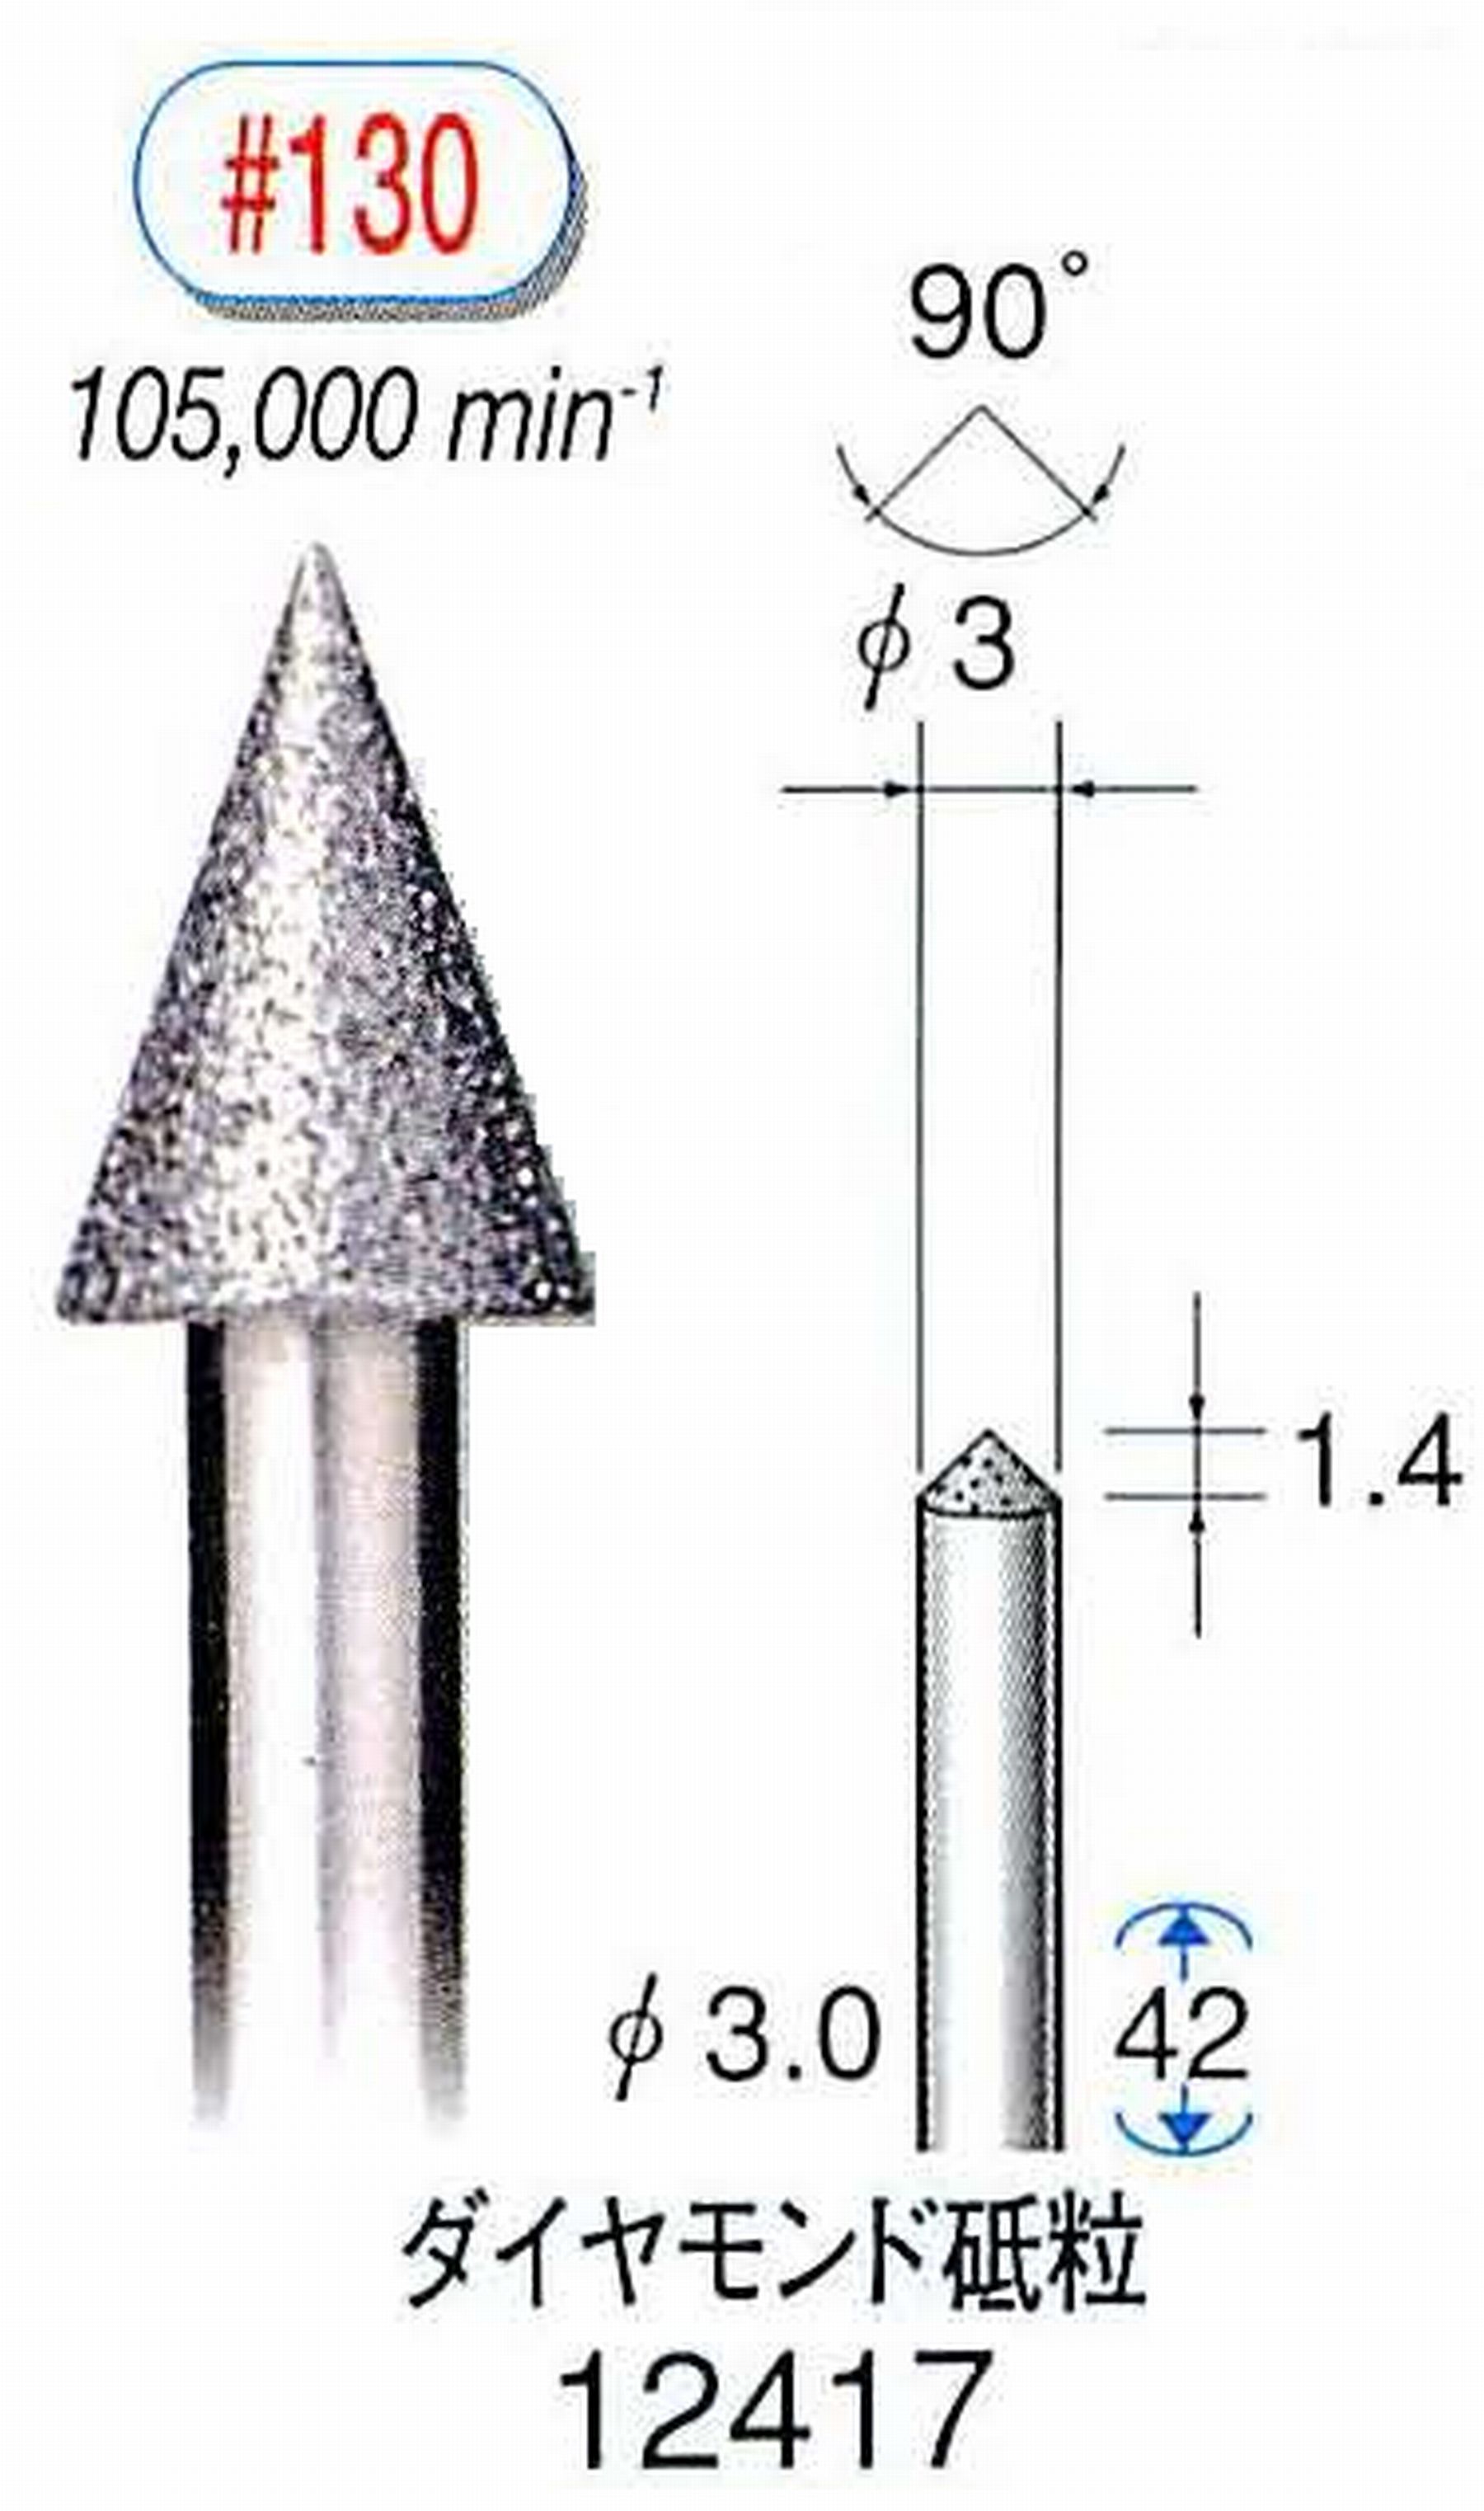 ナカニシ/NAKANISHI 電着ダイヤモンド ダイヤモンド砥粒 軸径(シャンク)φ3.0mm 12417